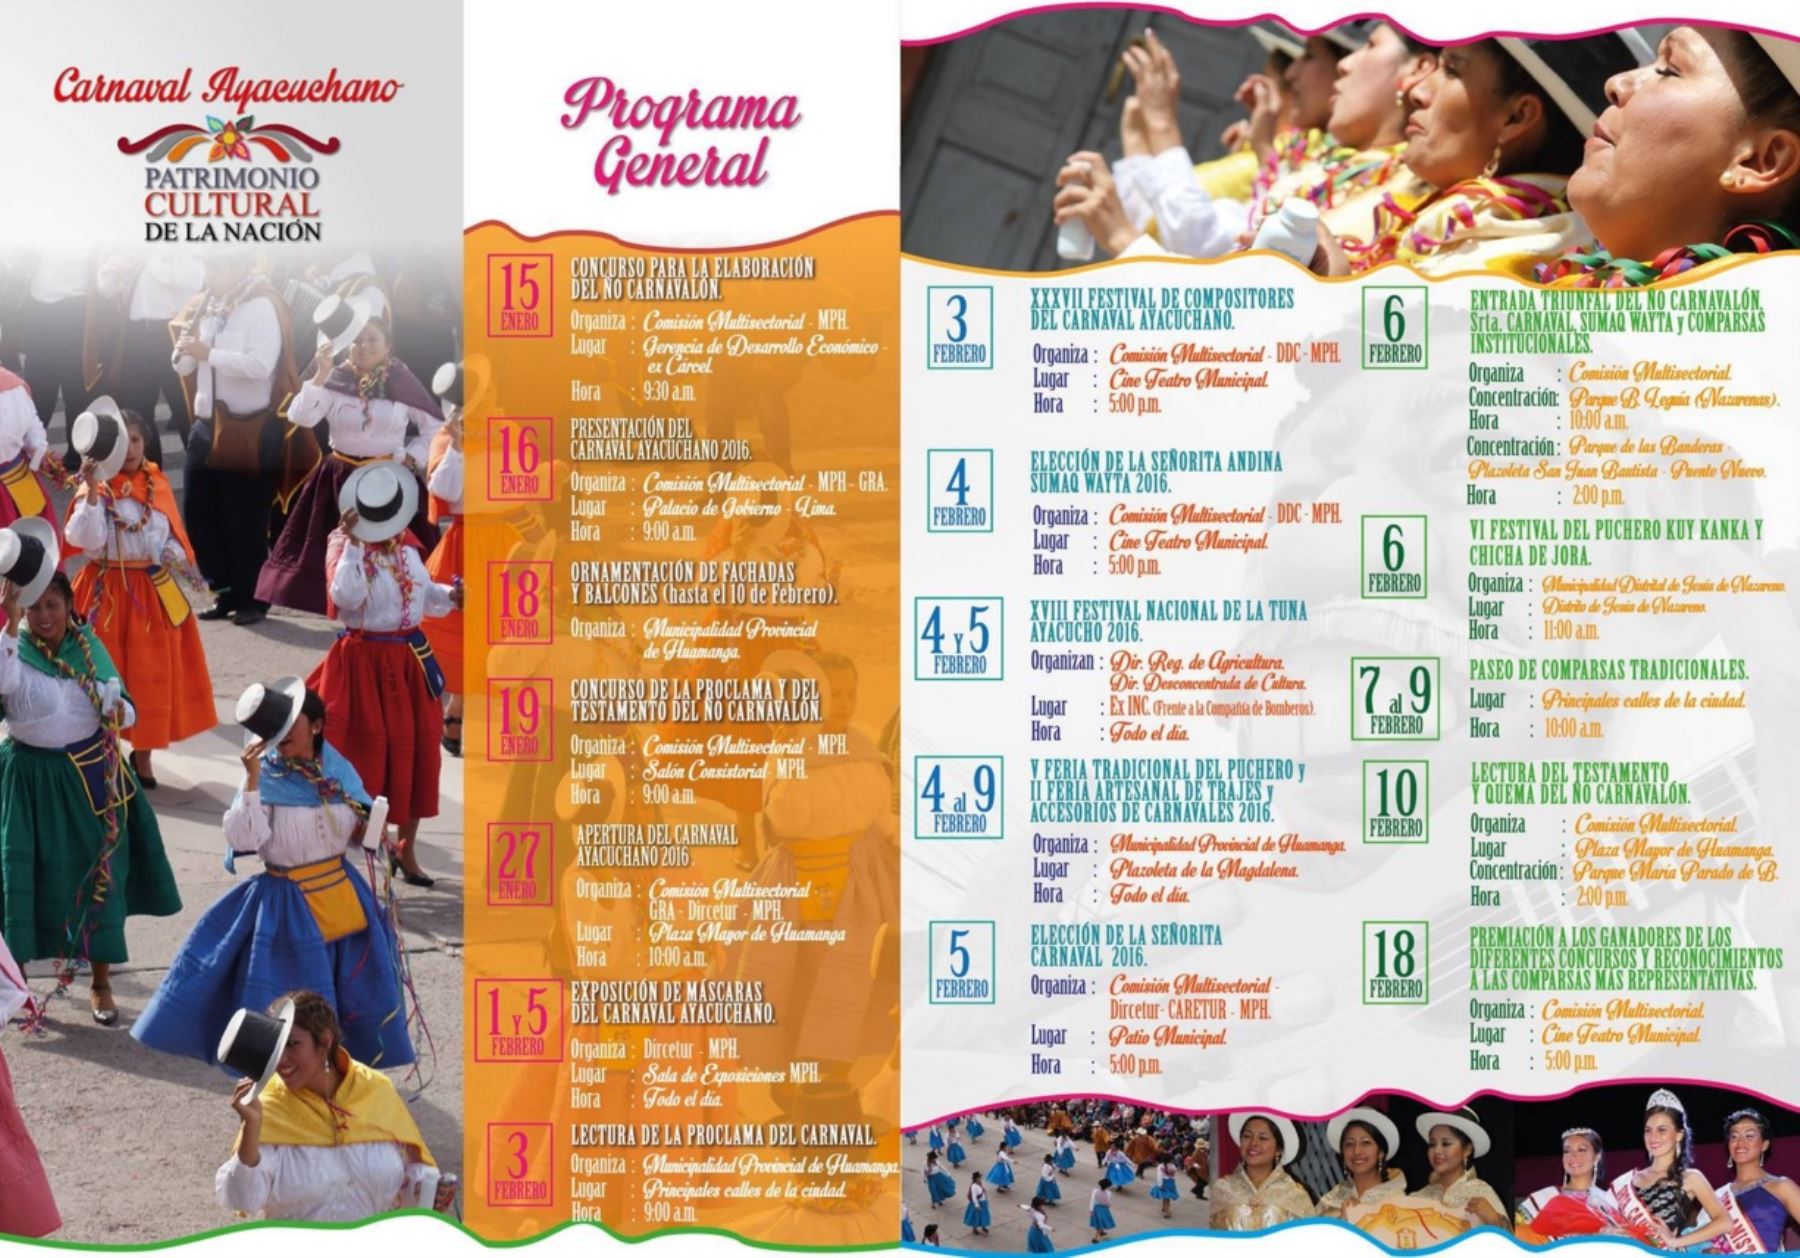 Programa del Carnaval Ayacuchano 2016